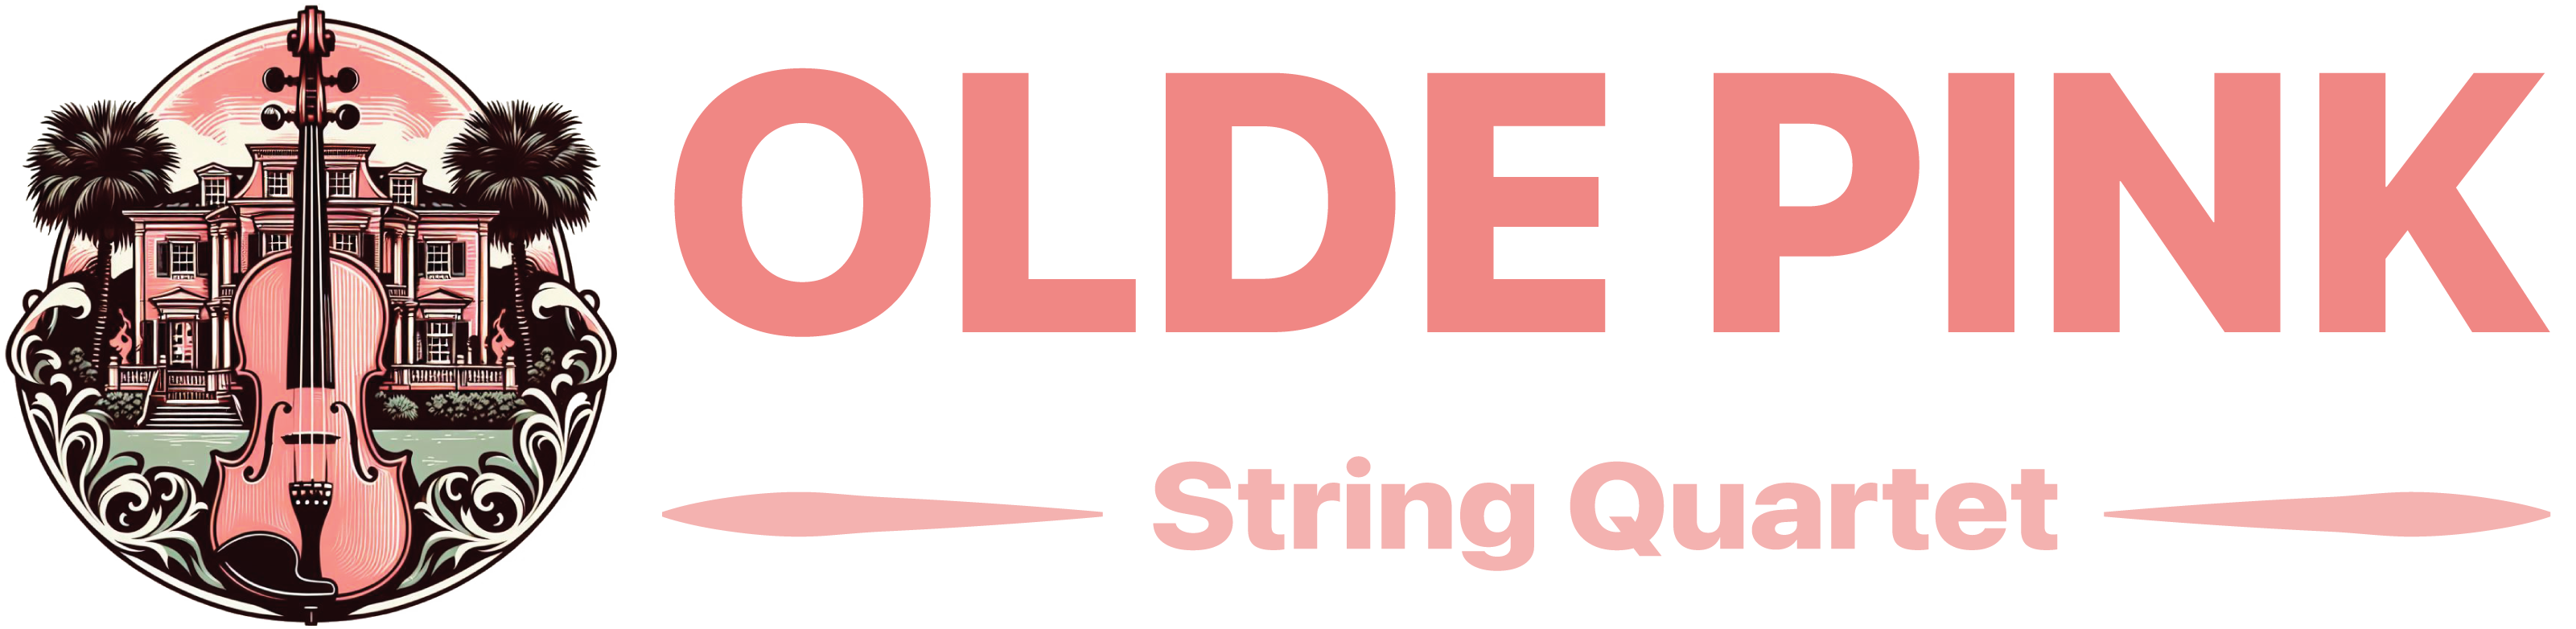 Olde Pink String Quartet Logo